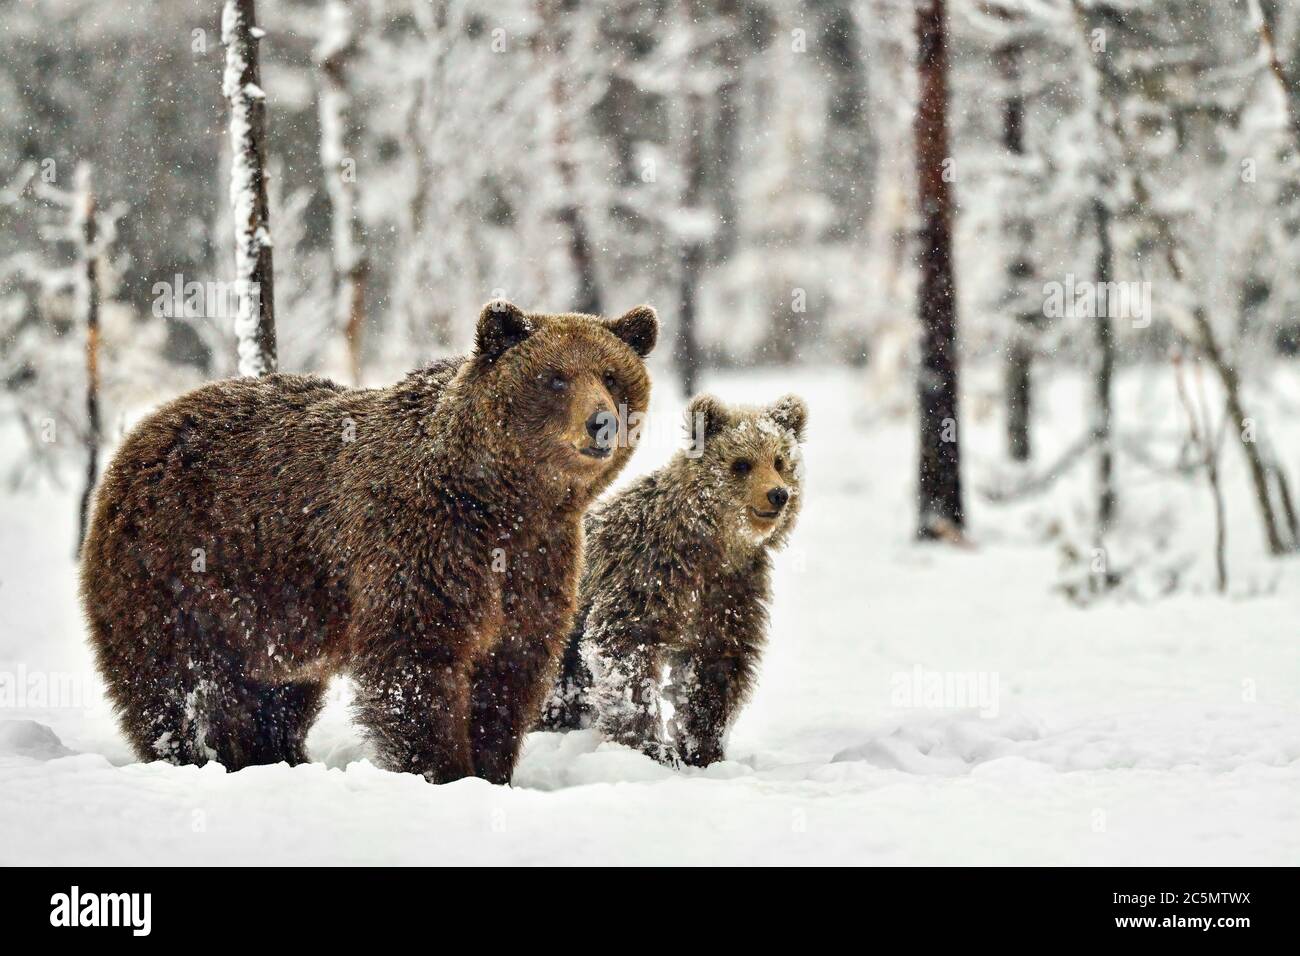 Maman ours brun avec des anyelings. C'est à mi-mai dans le nord de la Finlande où les ours se sont réveillés après la hipernation. Il devrait être le printemps maintenant mais plutôt l'hiver Banque D'Images